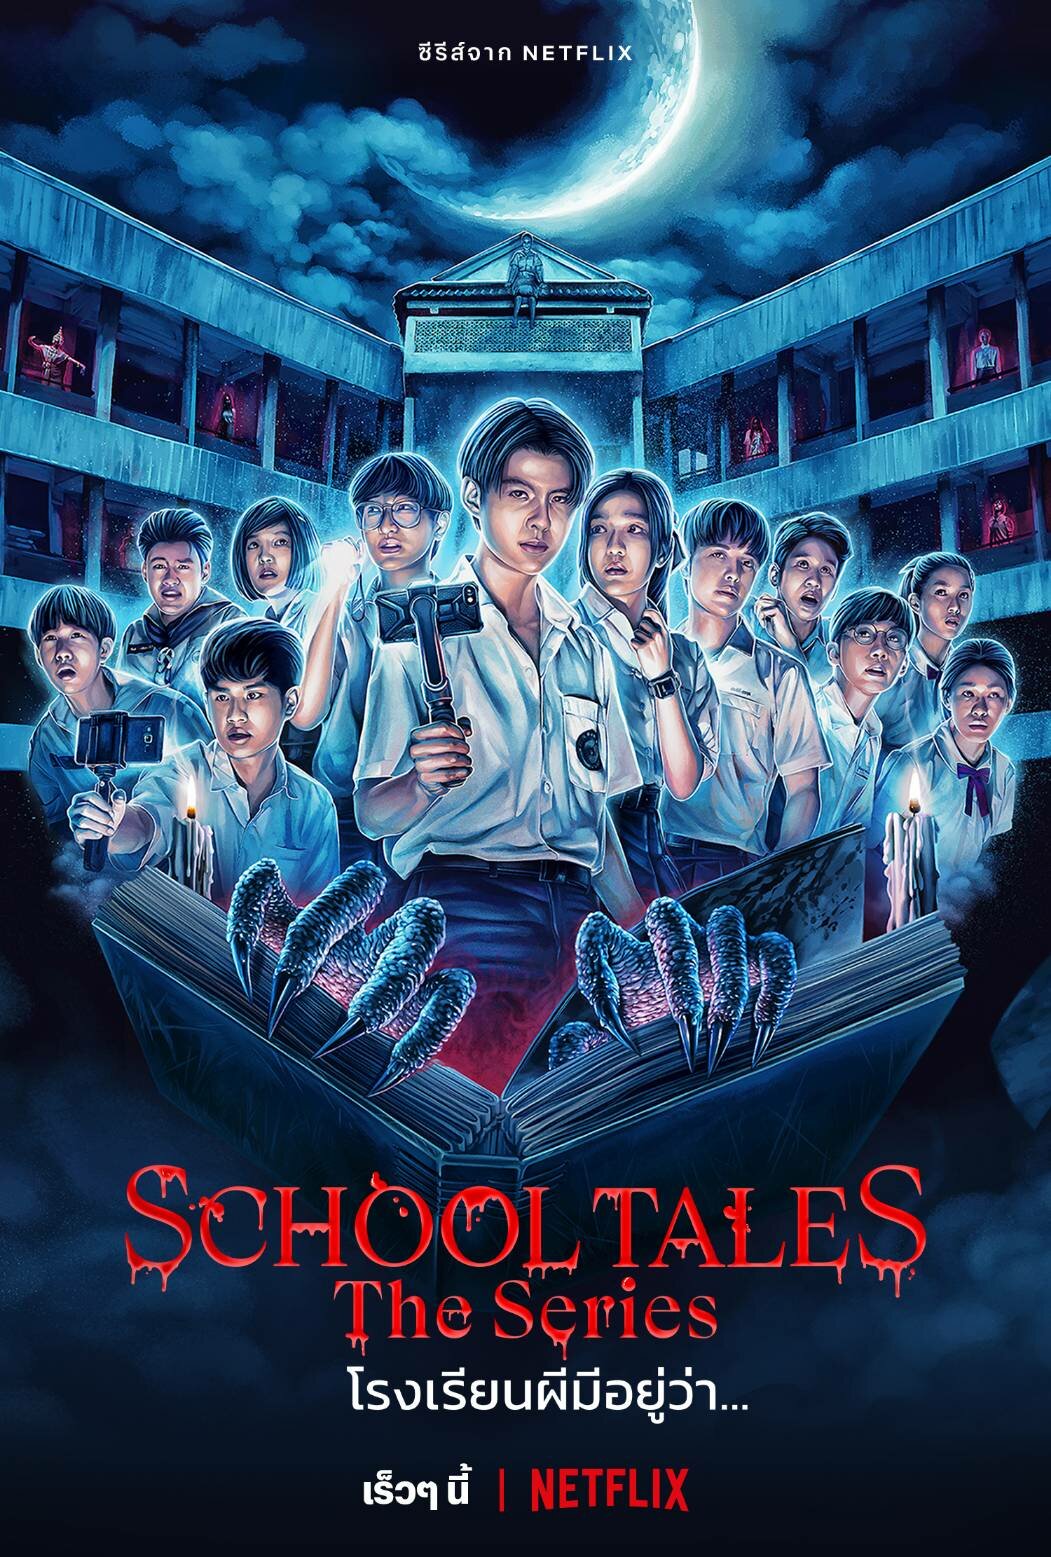 School Tales The Series ne zaman